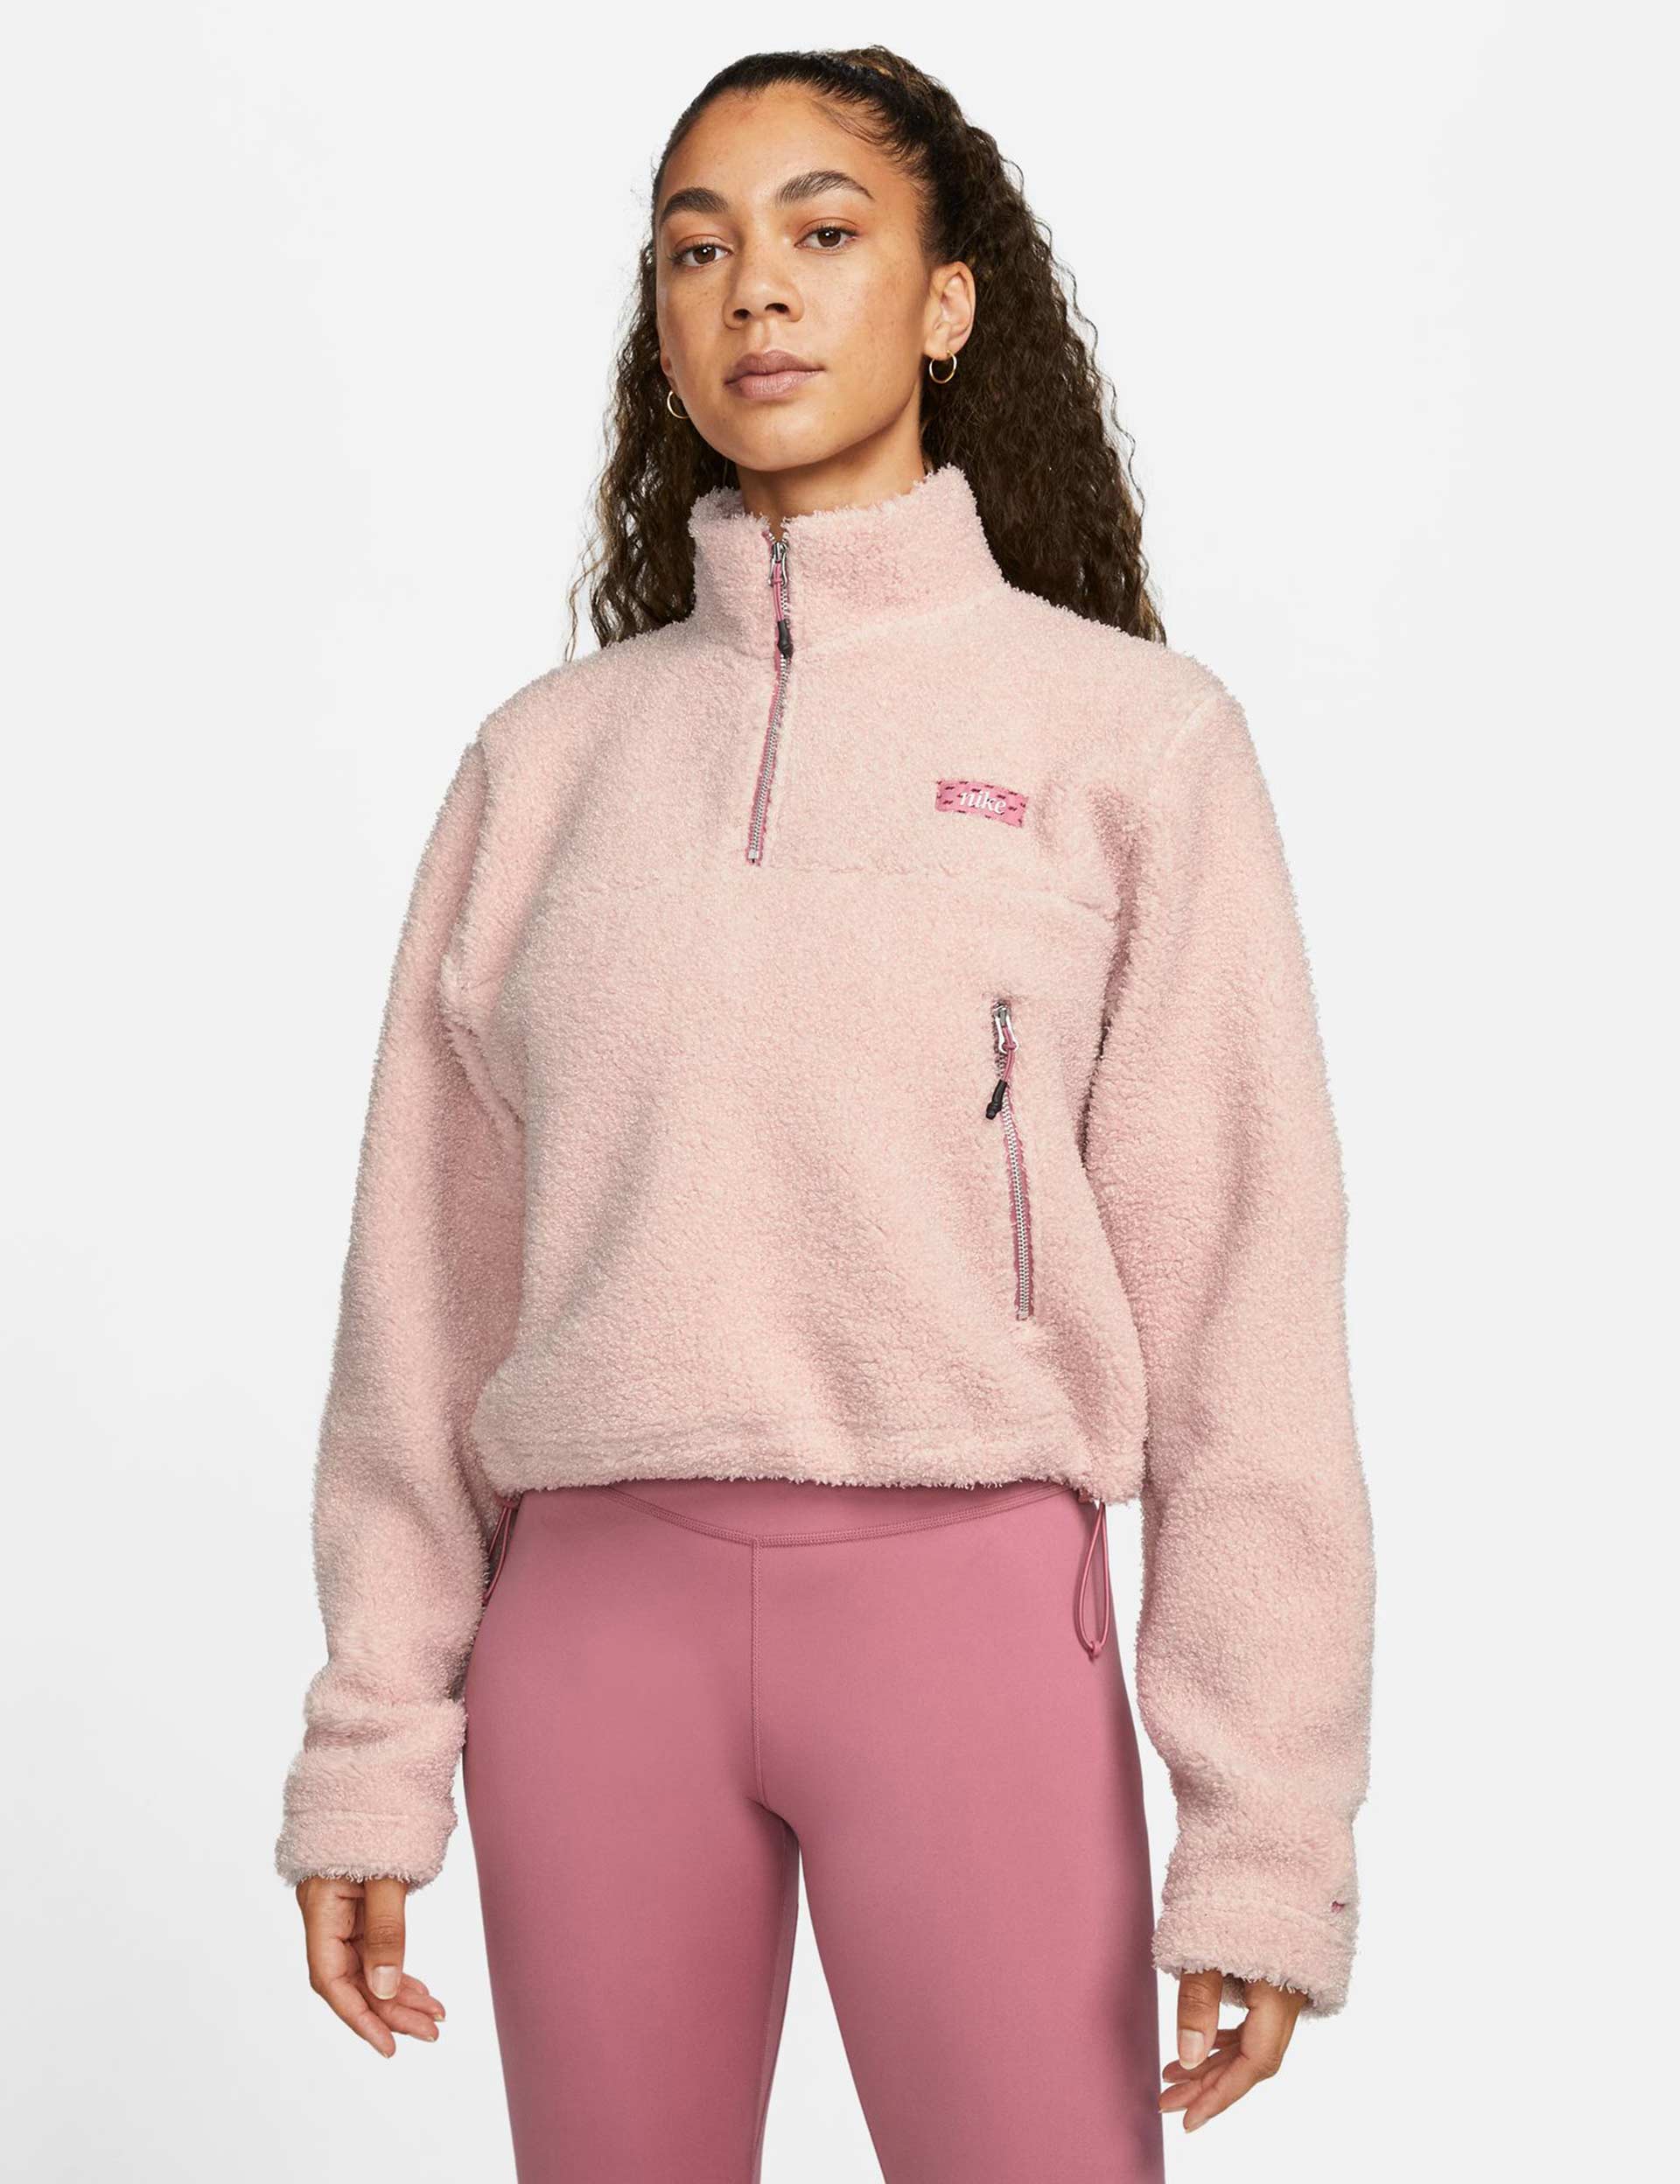 Nike Therma-fit Half Zip Top In Pink